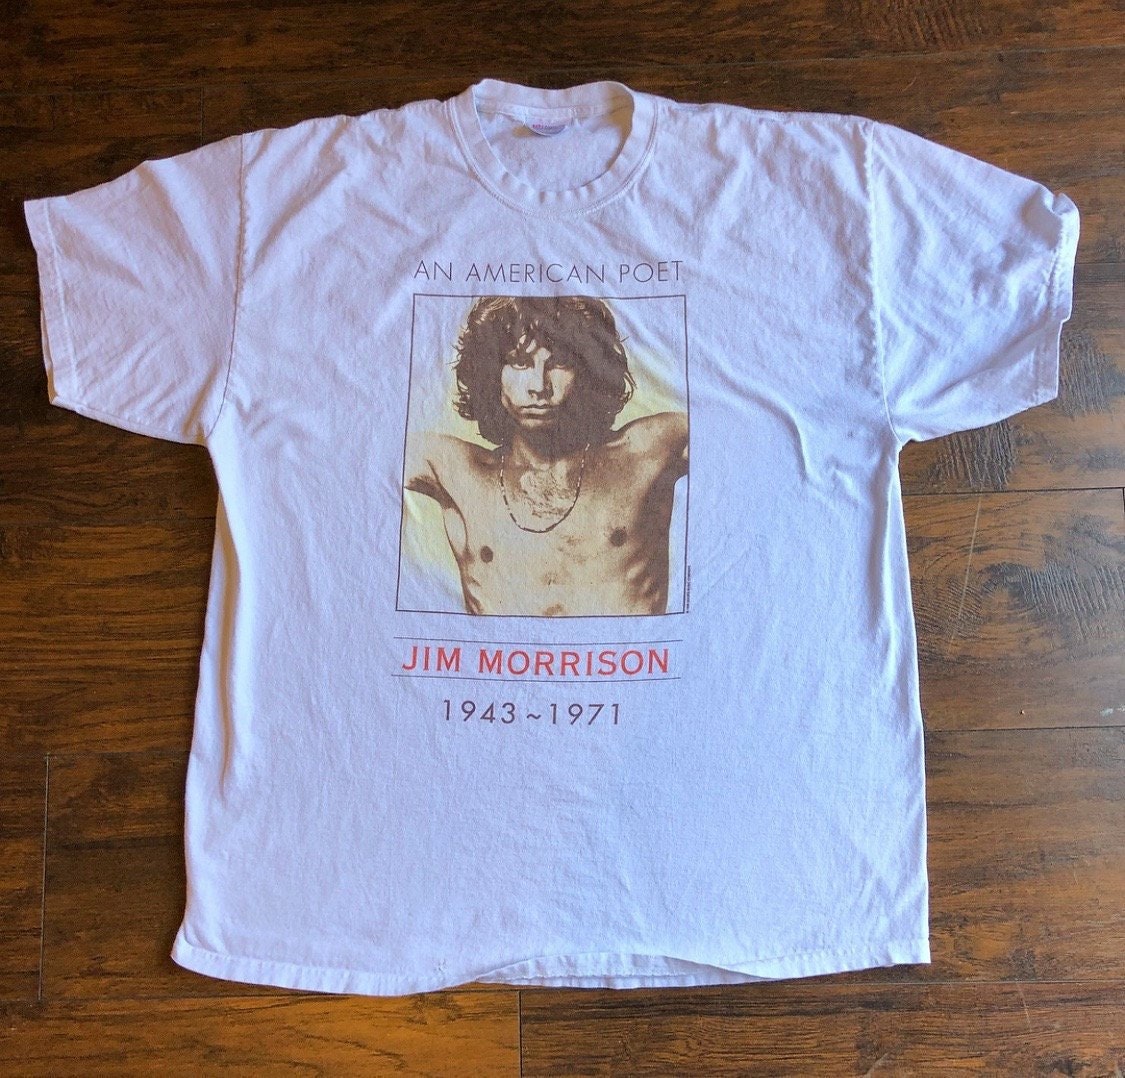 Vintage Jim Morrison An American Poet graphic t shirt unisex size L-XL